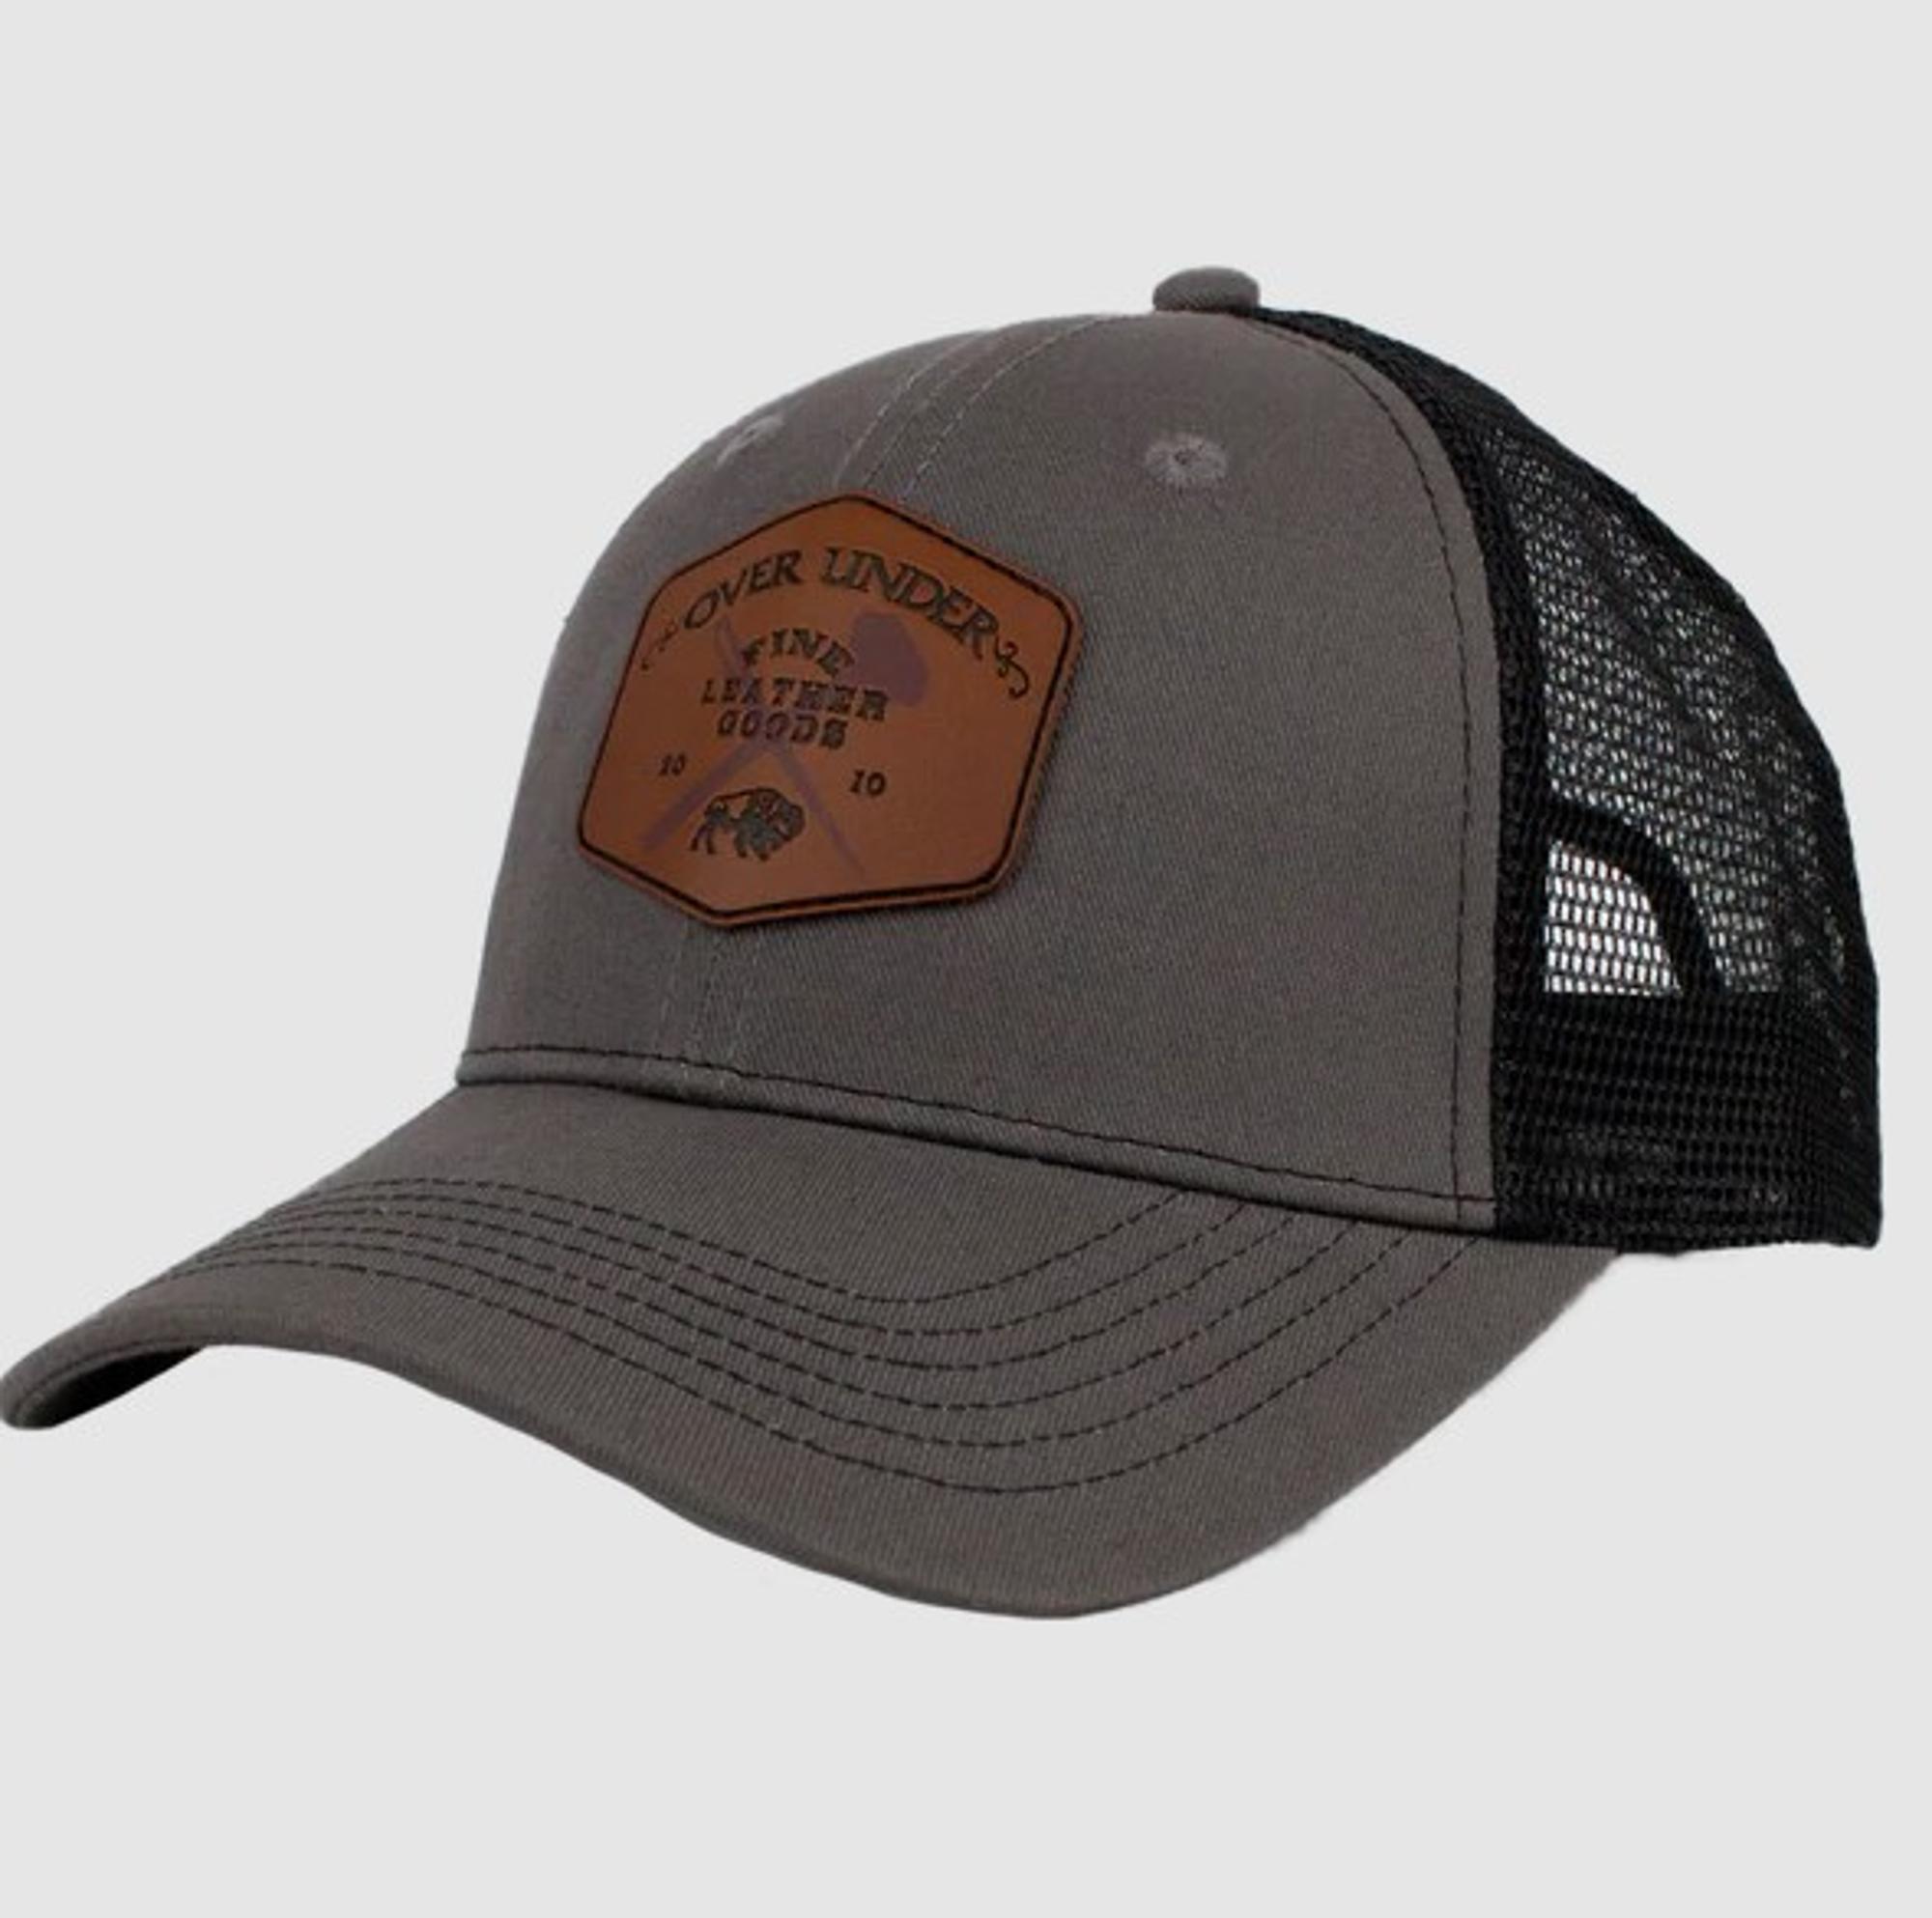 Fine Leather Goods Mesh Back Trucker Hat